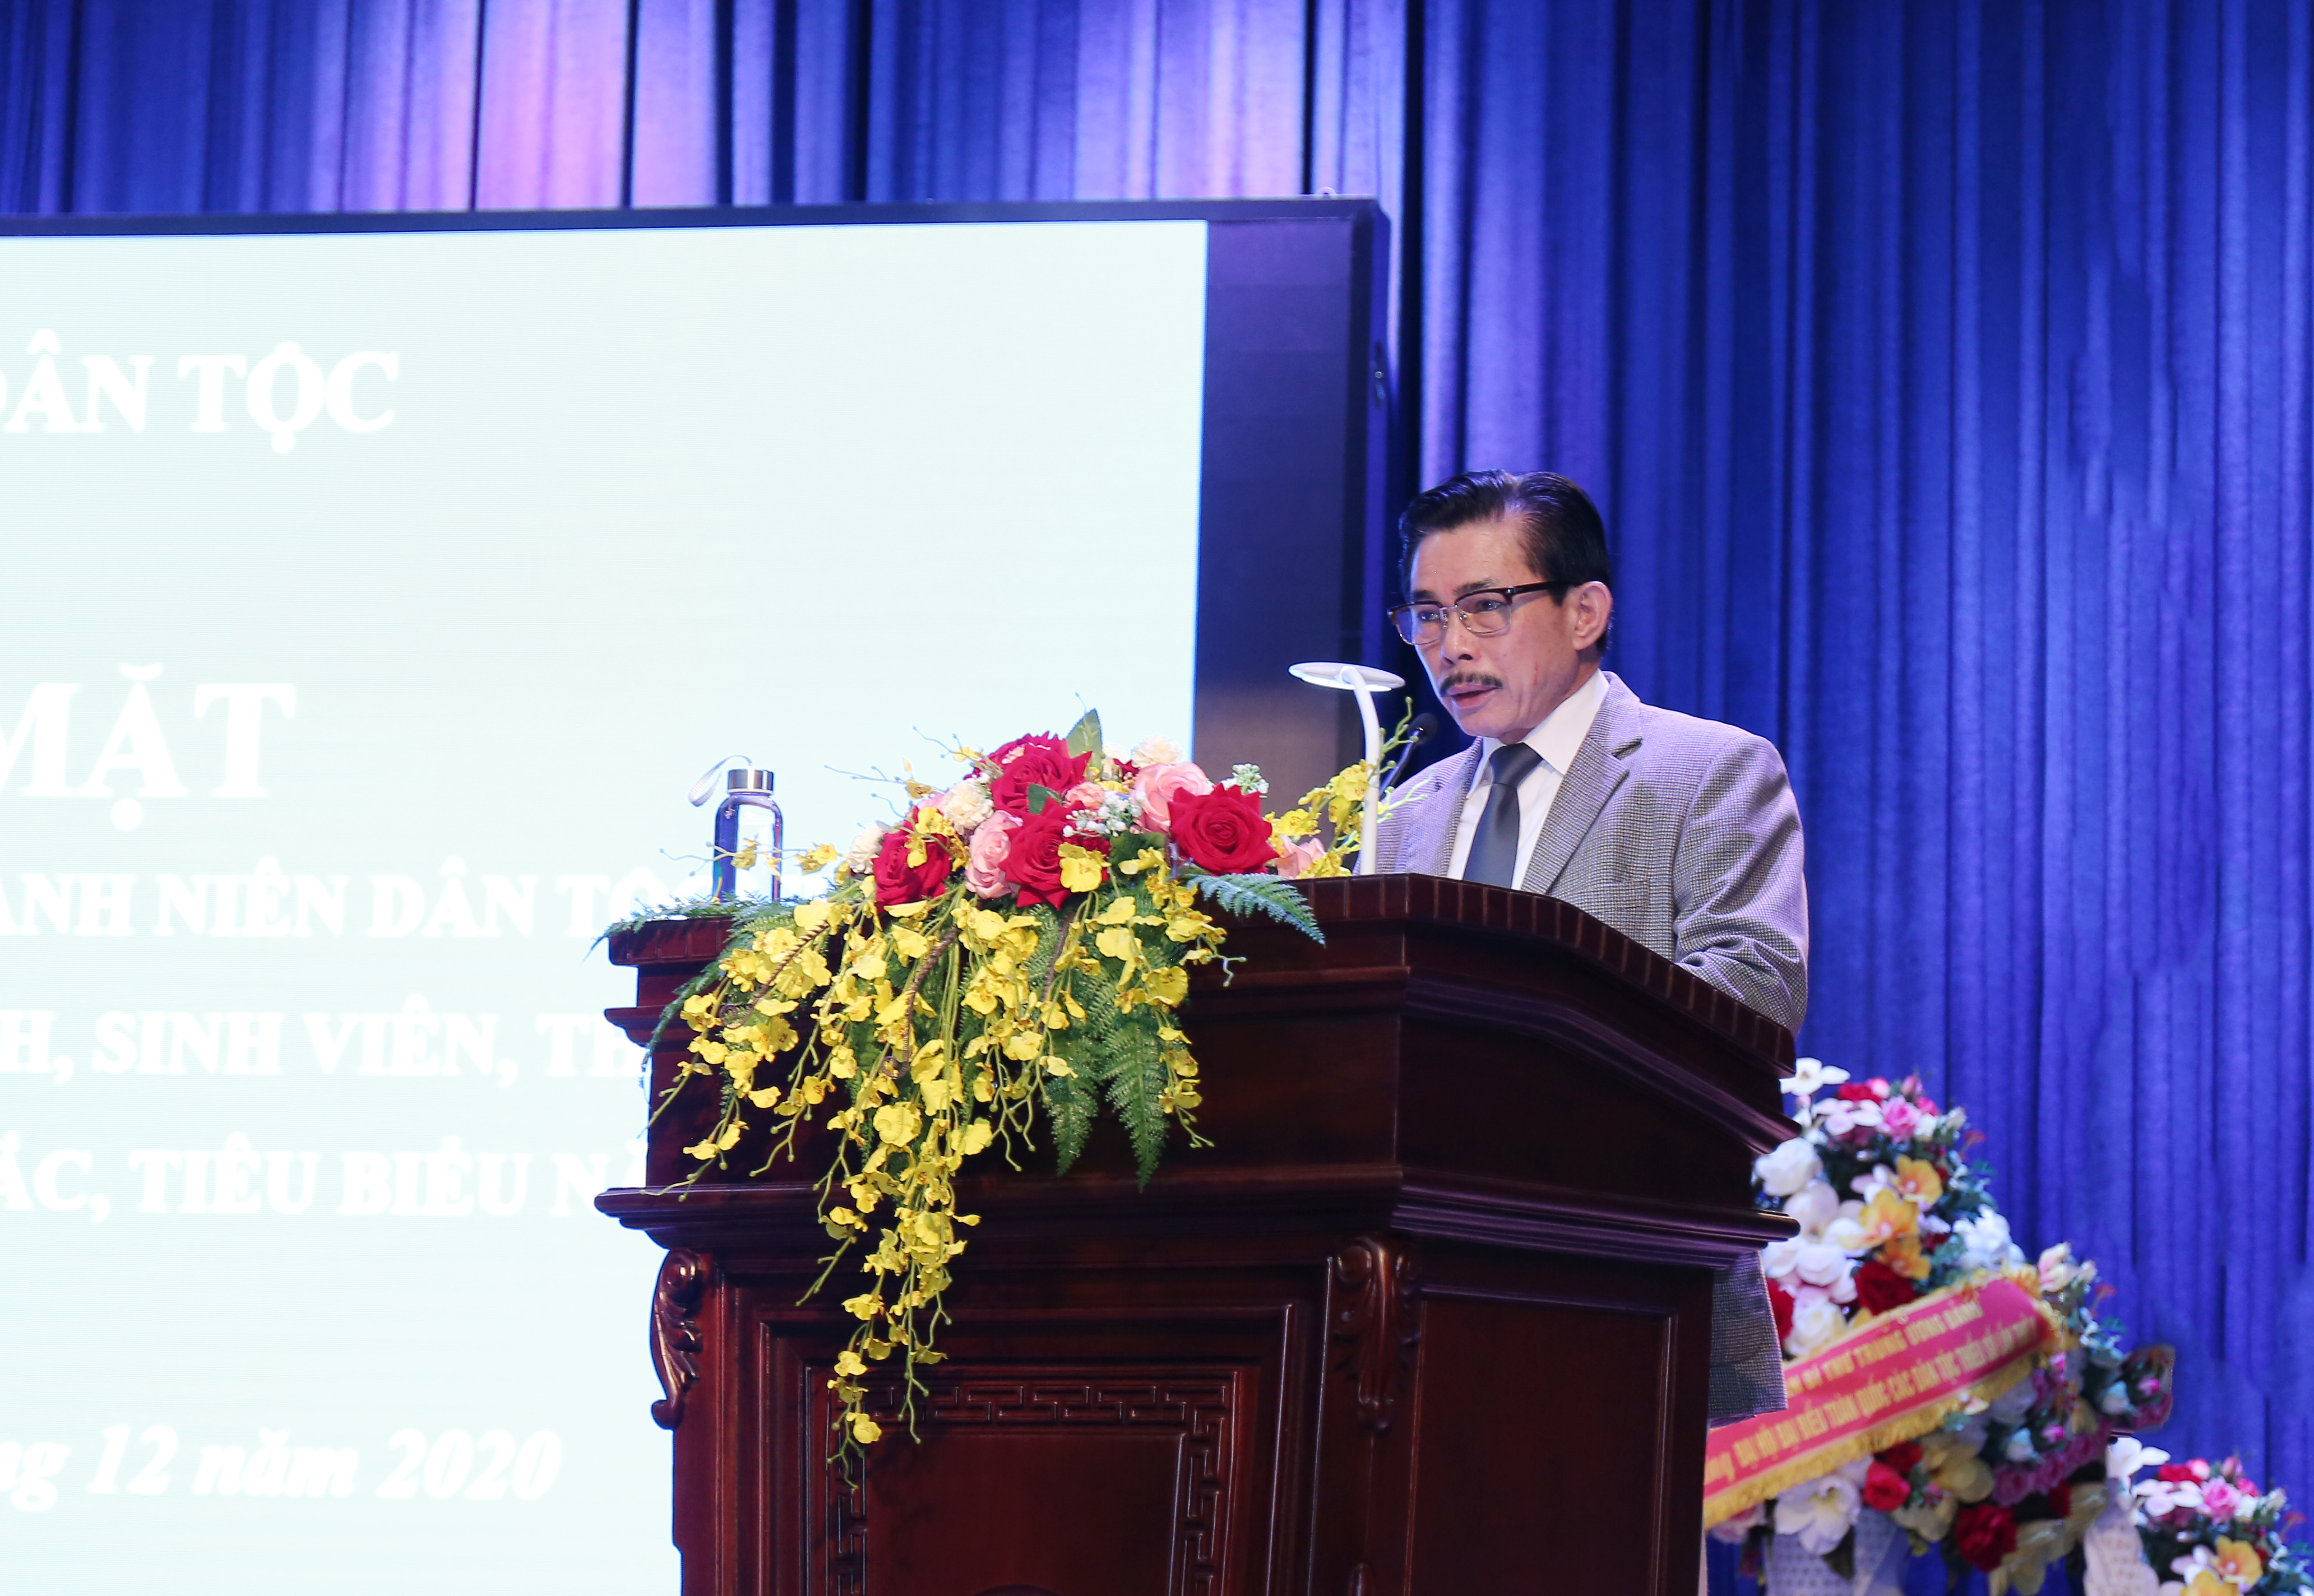 Ông Lê Công Bình, Tổng Biên tập báo Dân tộc và Phát triển, Trưởng Ban Tổ chức Lễ Tuyên dương báo cáo một số nội dung trọng tâm về Lễ Tuyên dương tại buổi gặp mặt.